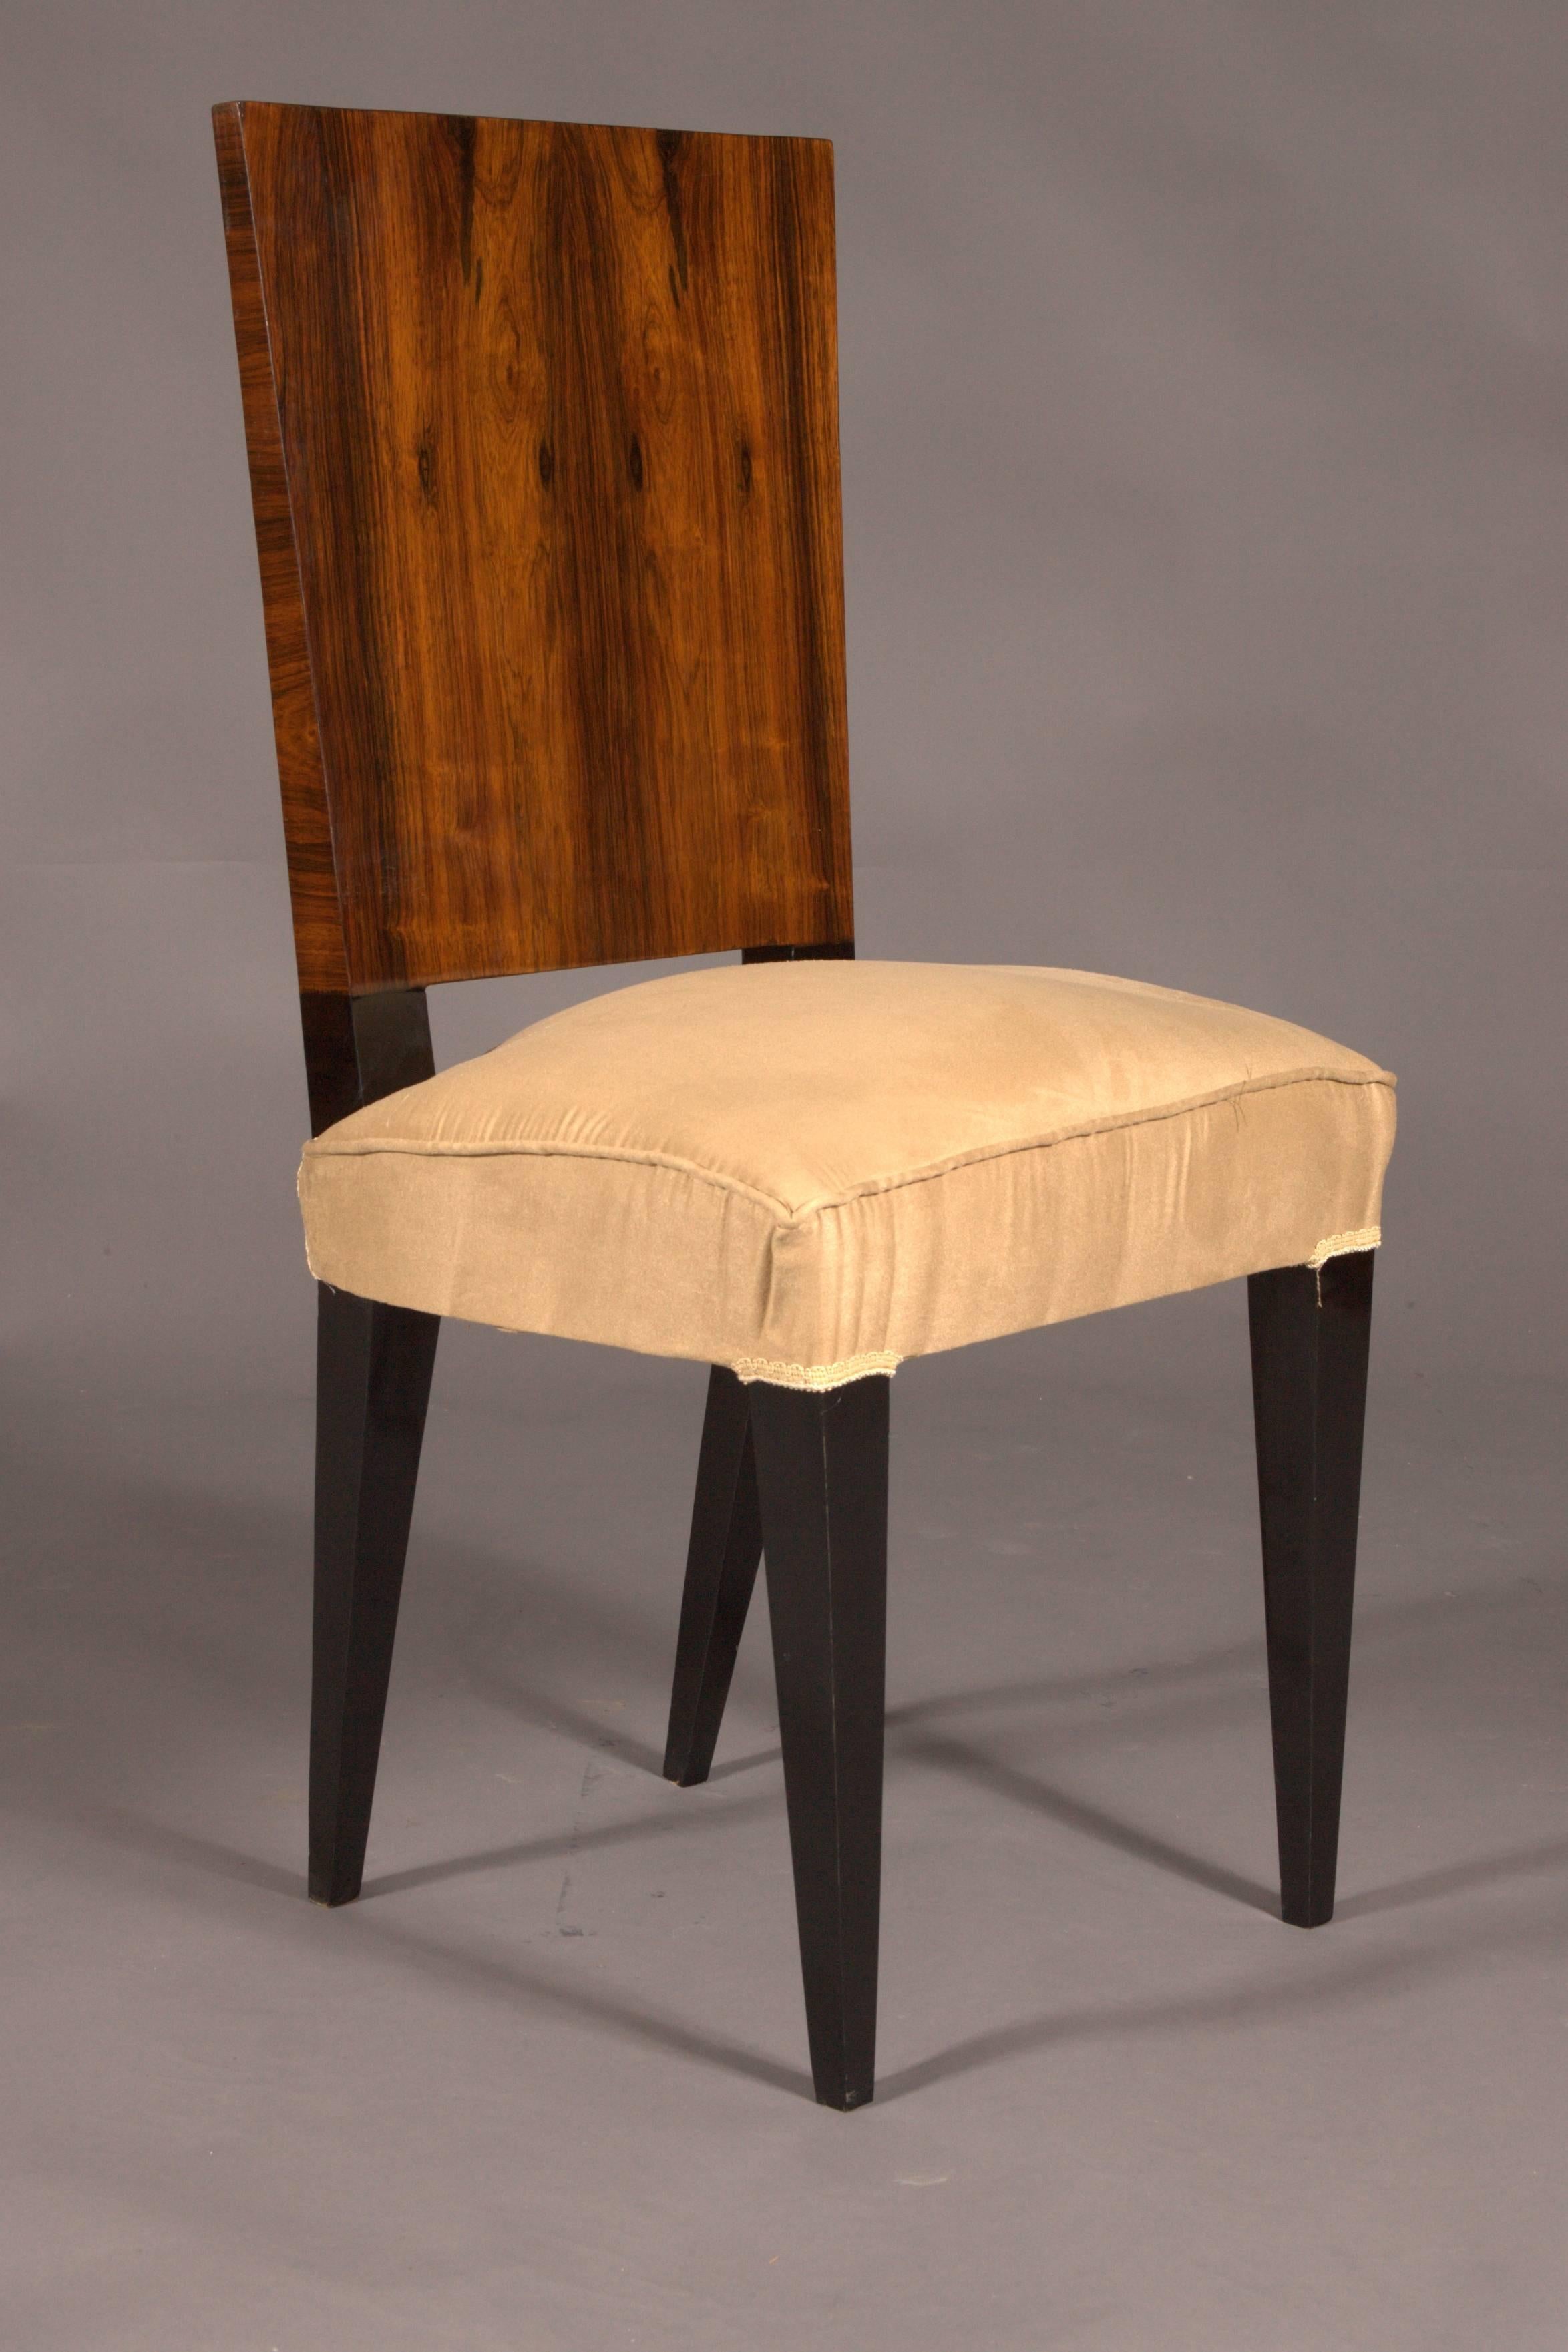 French 1 Elegant Chair in Art Deco Style, Rosewood Veneer